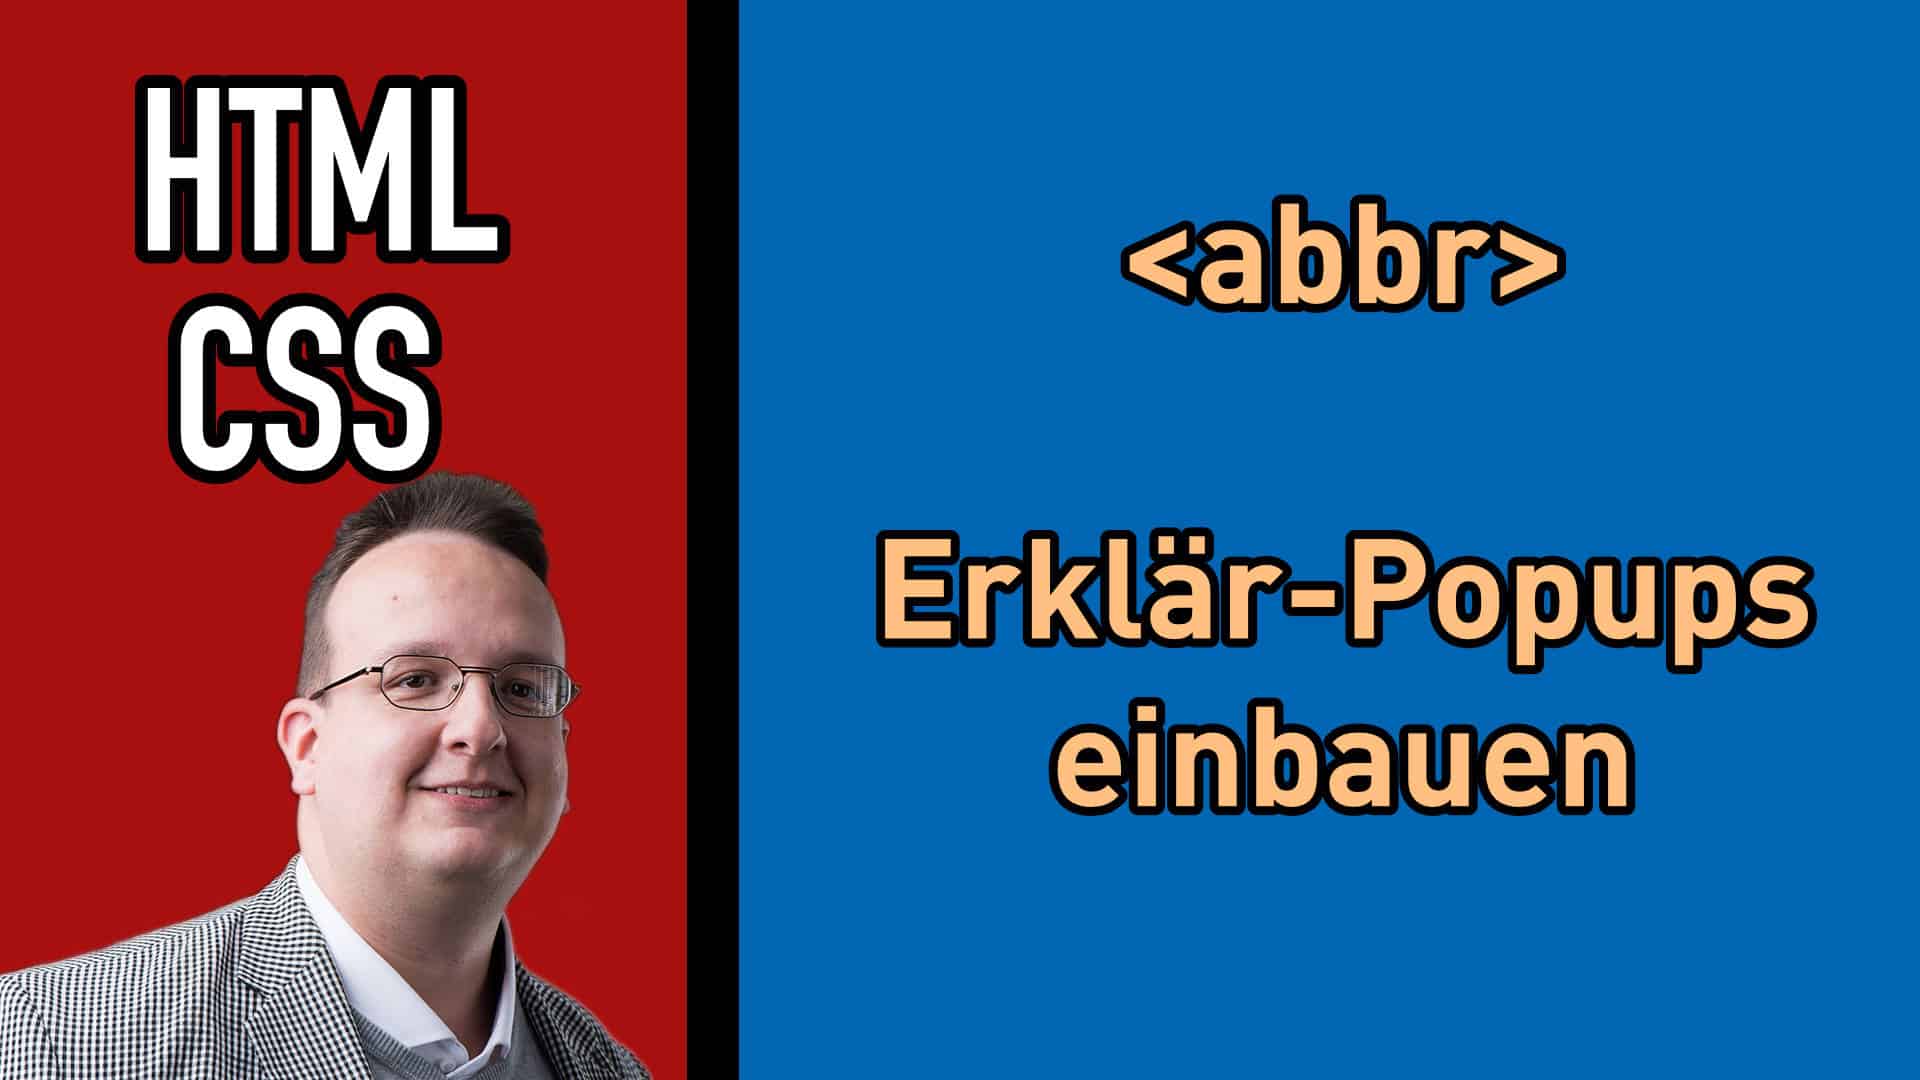 HTML Tag ABBR – wie man Erklär-Popups mit HTML und CSS erstellen kann